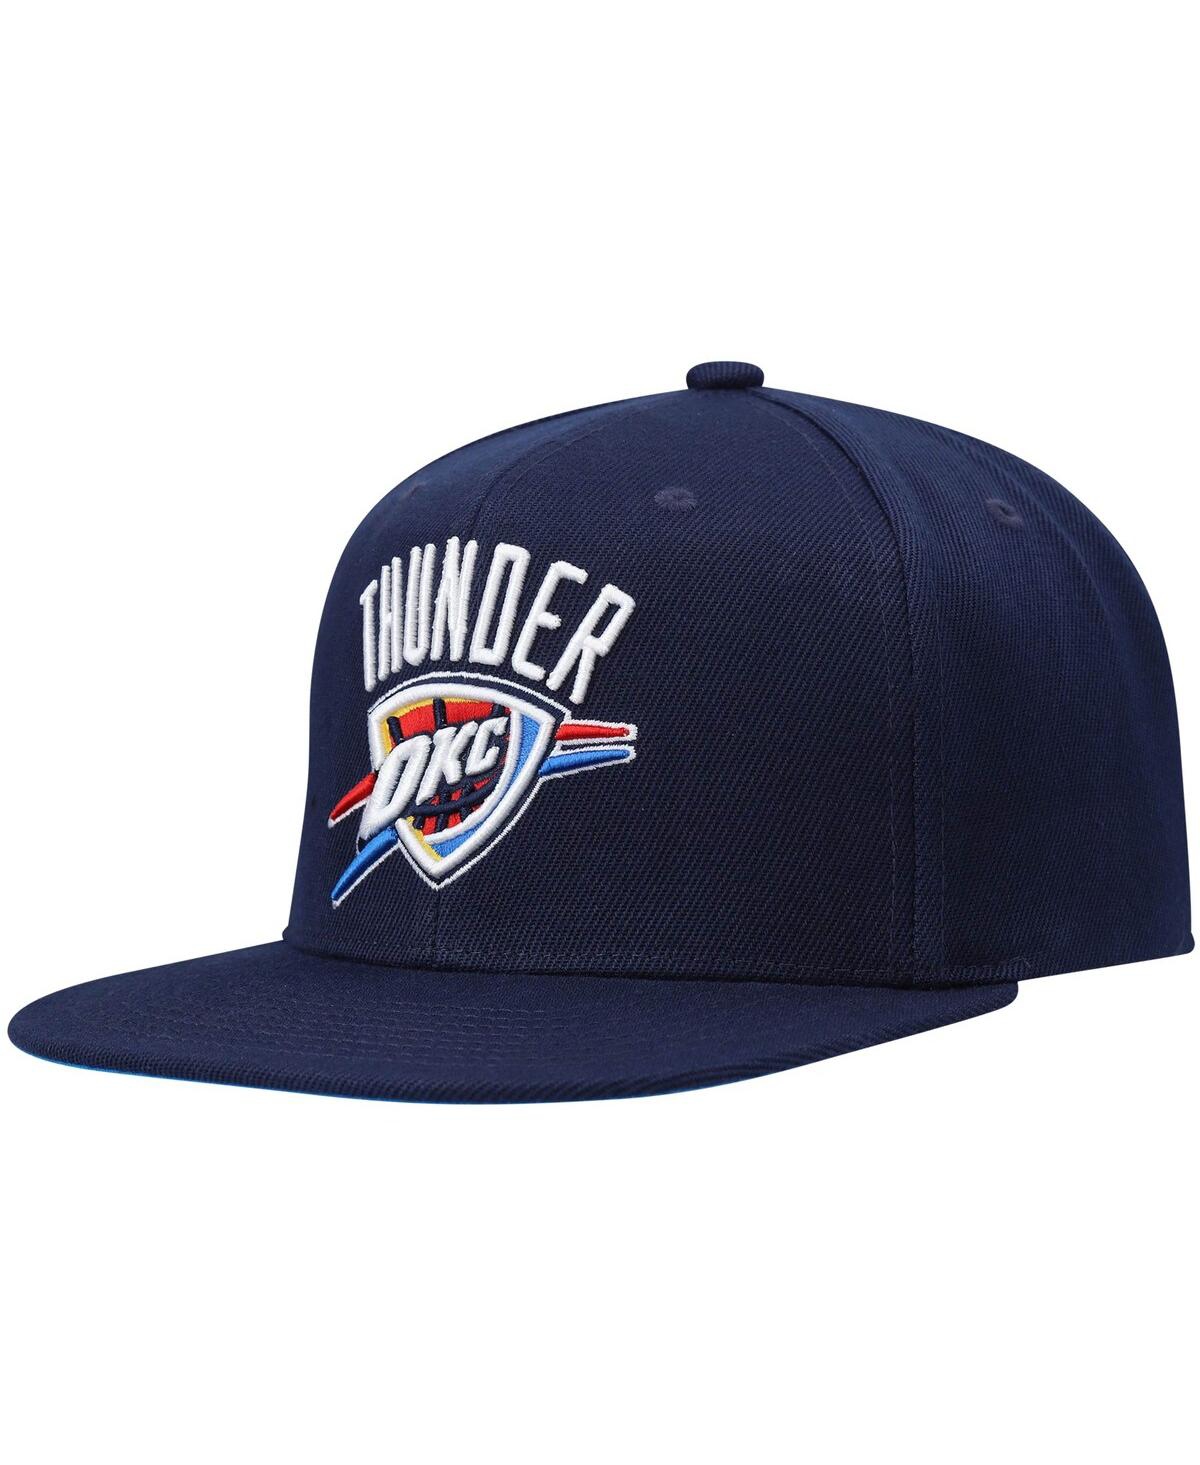 Shop Mitchell & Ness Men's  Navy Oklahoma City Thunder Core Side Snapback Hat